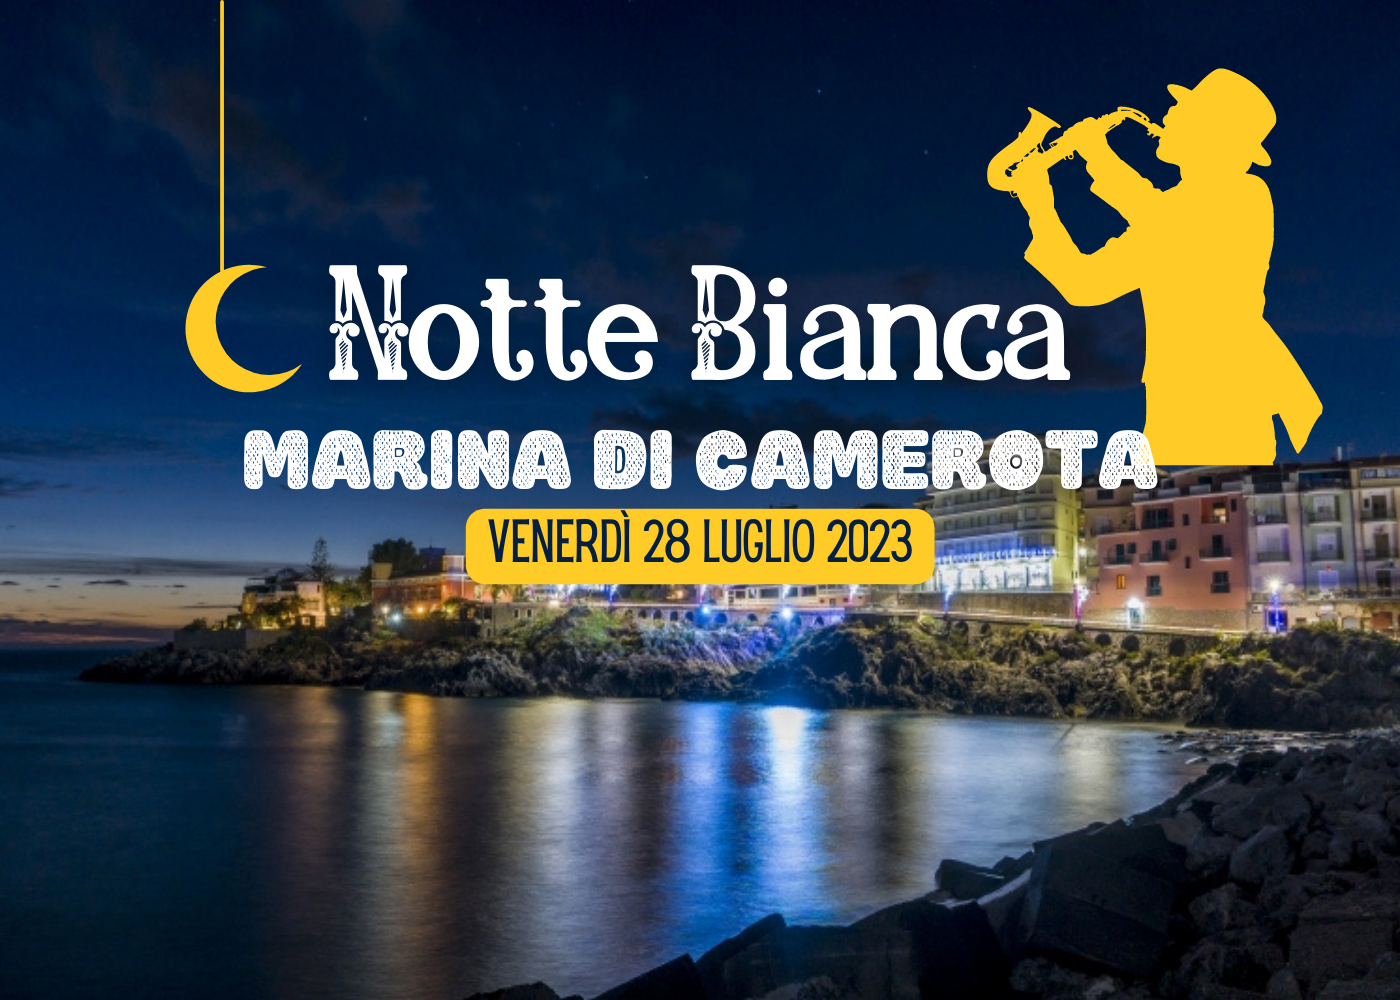 Venerdì 28 luglio Notte Bianca a Marina di Camerota: artisti di strada, dj-set, sfilate, mercatini e concerti